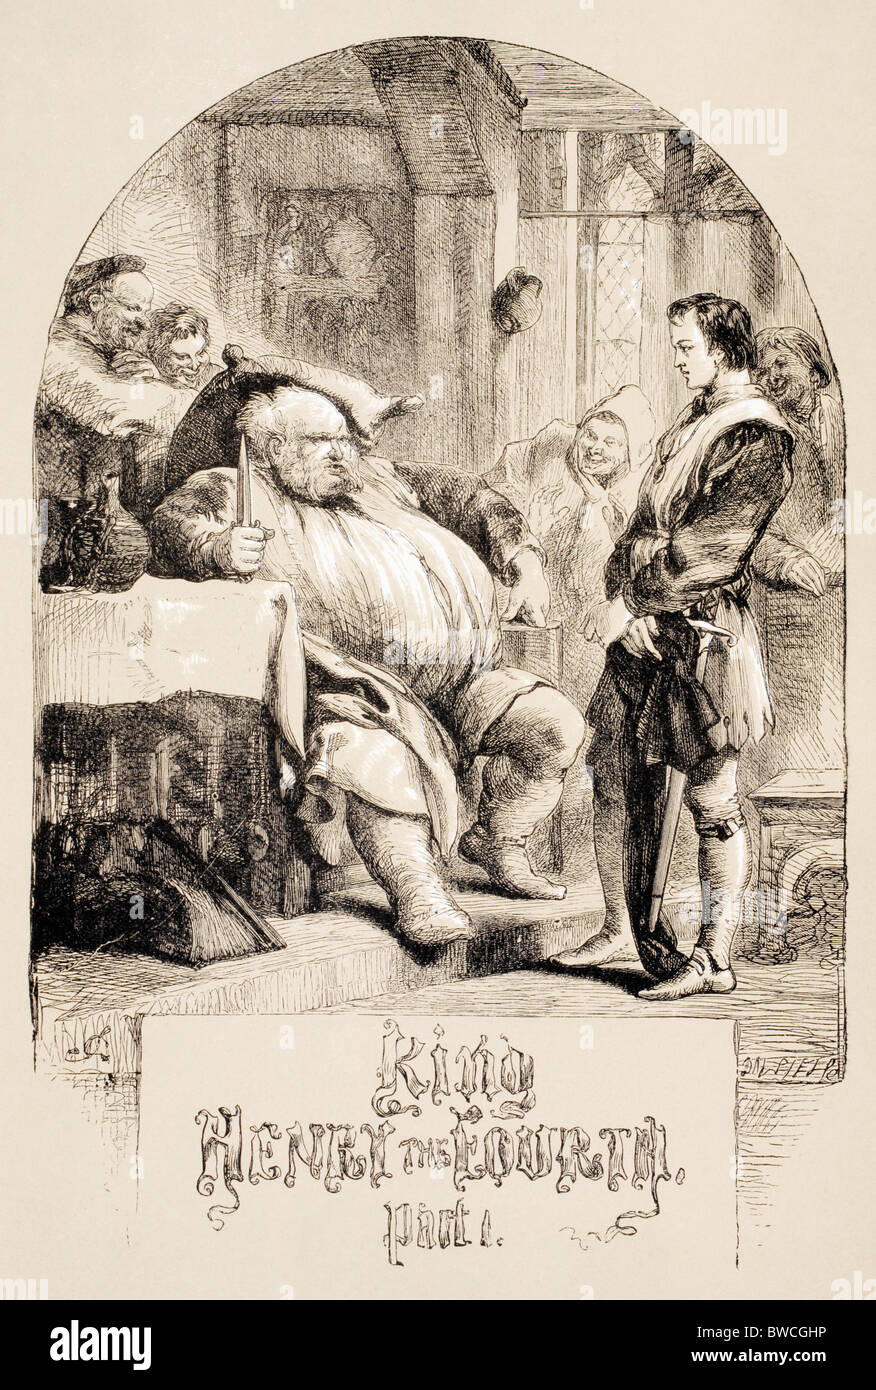 Illustration von Sir John Gilbert für König Henry IV, Teil 1, von William Shakespeare. Stockfoto